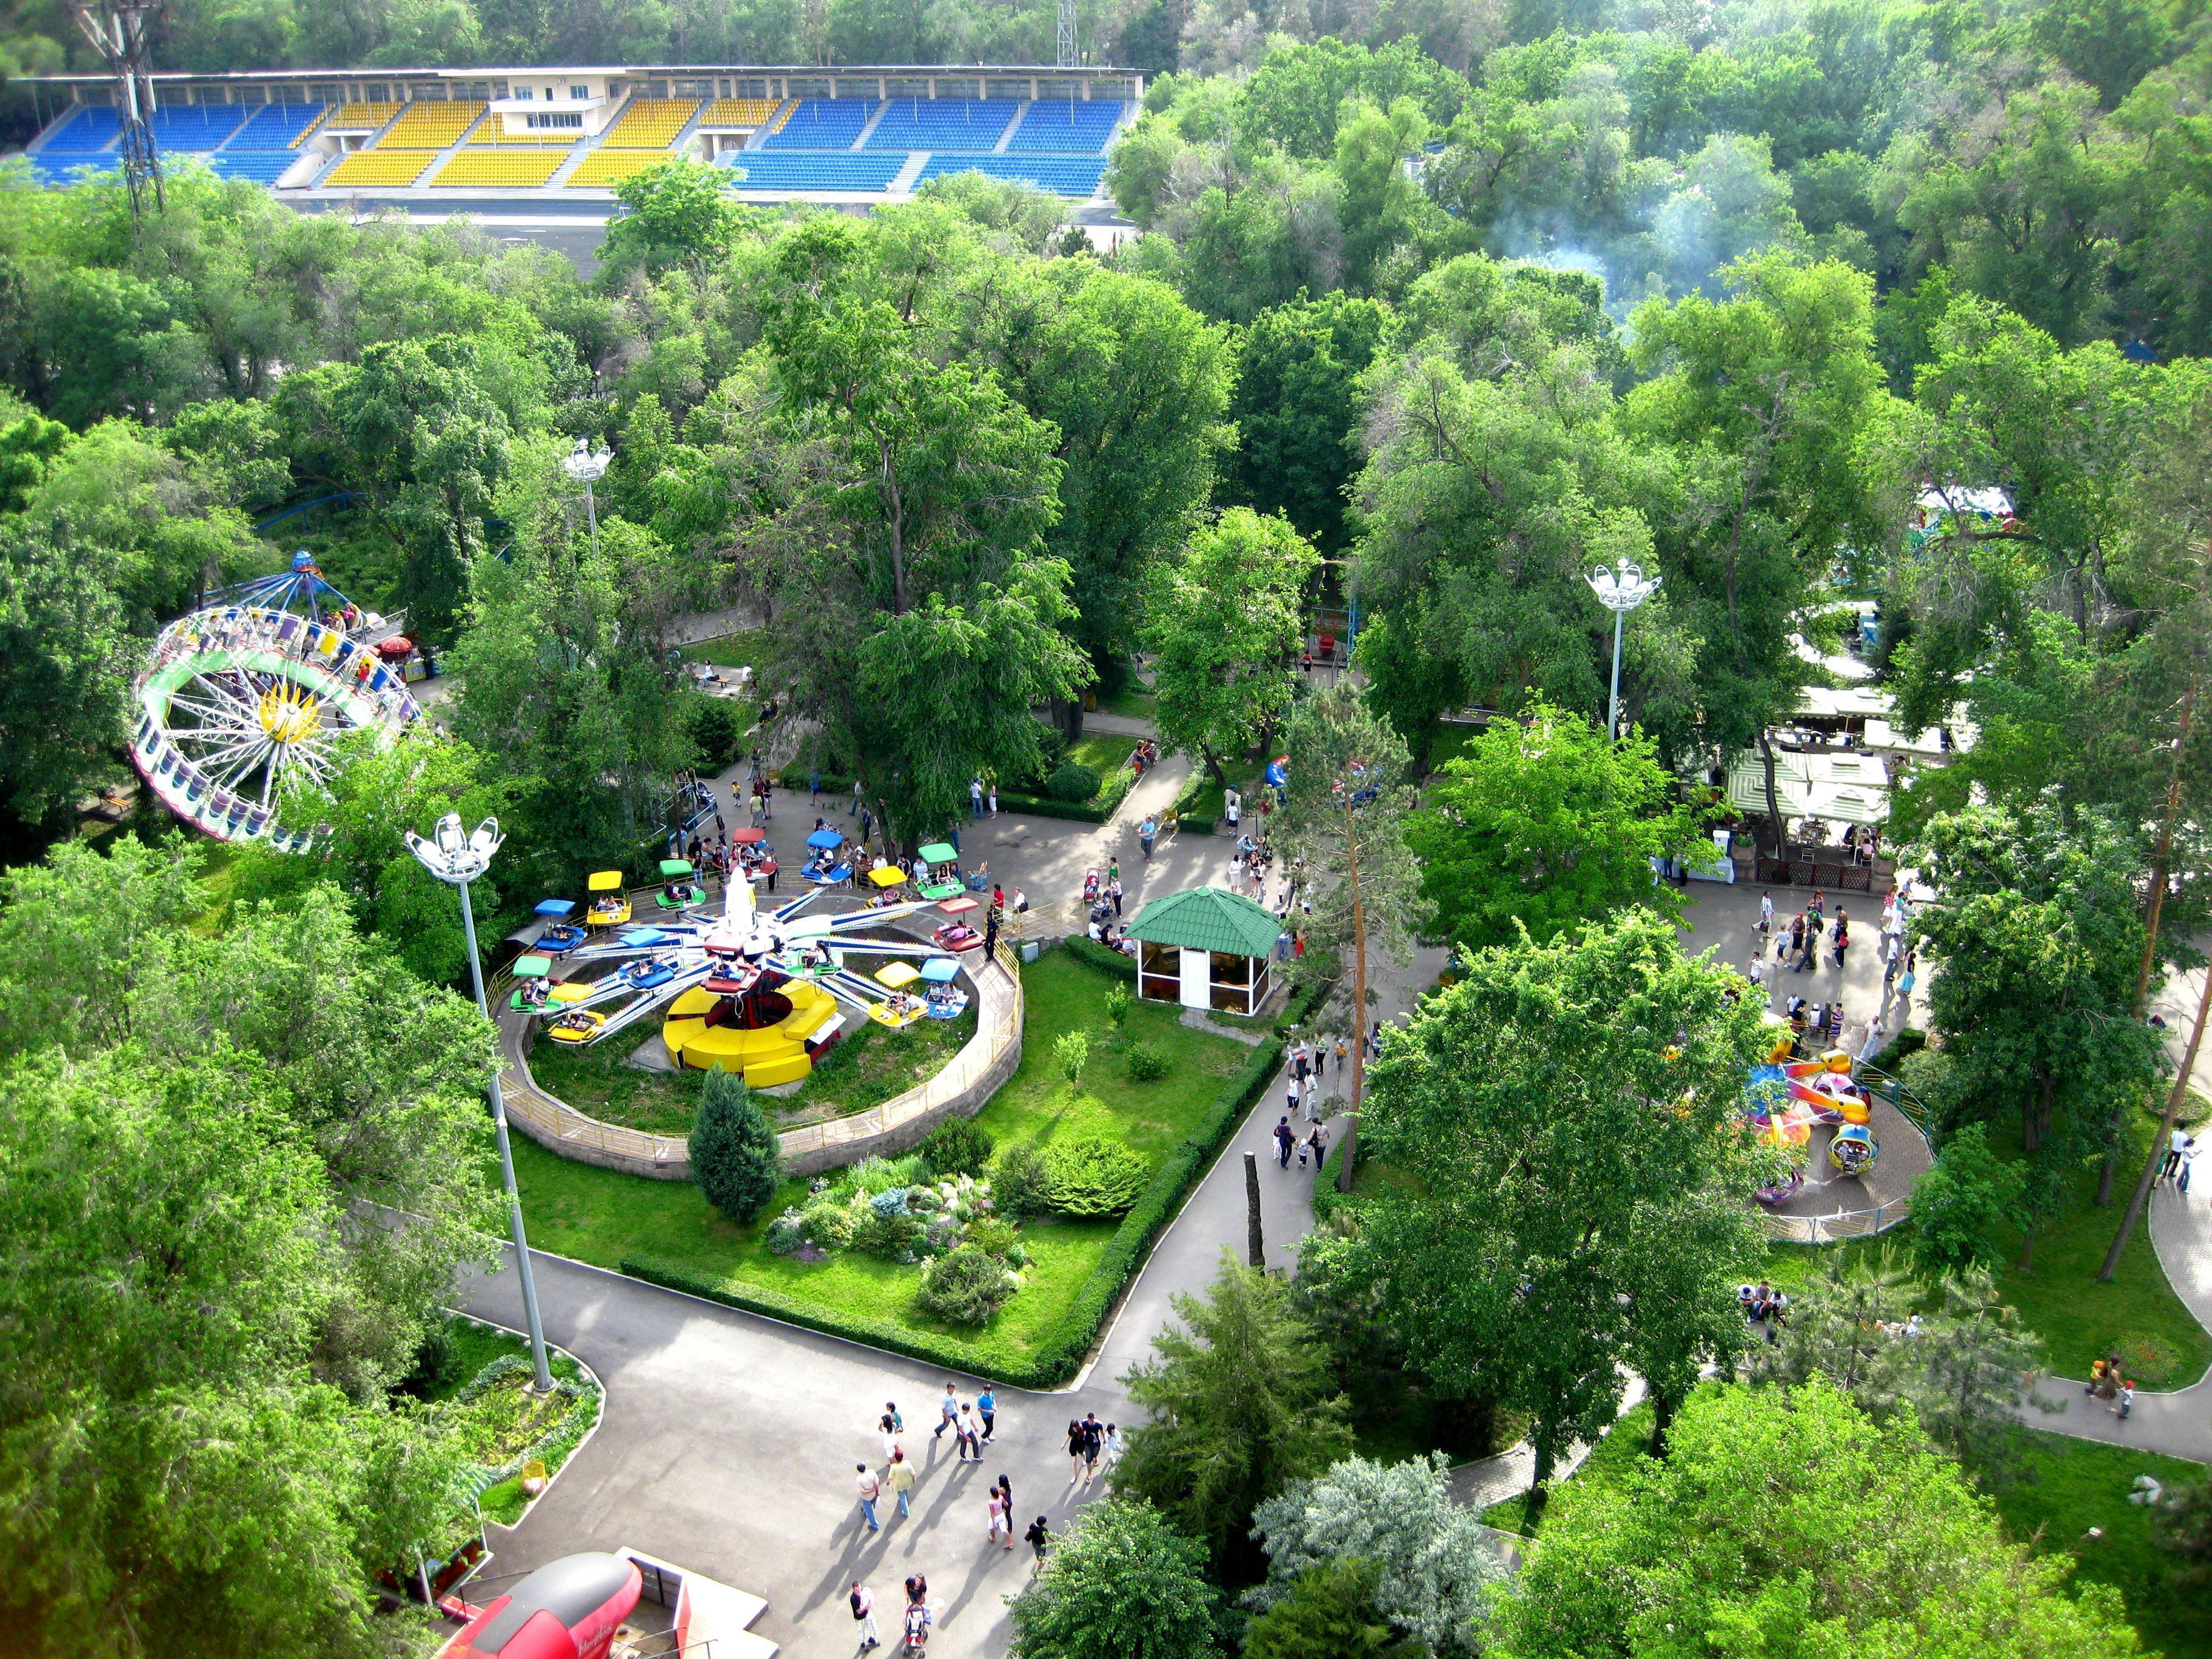 Gorky Park: